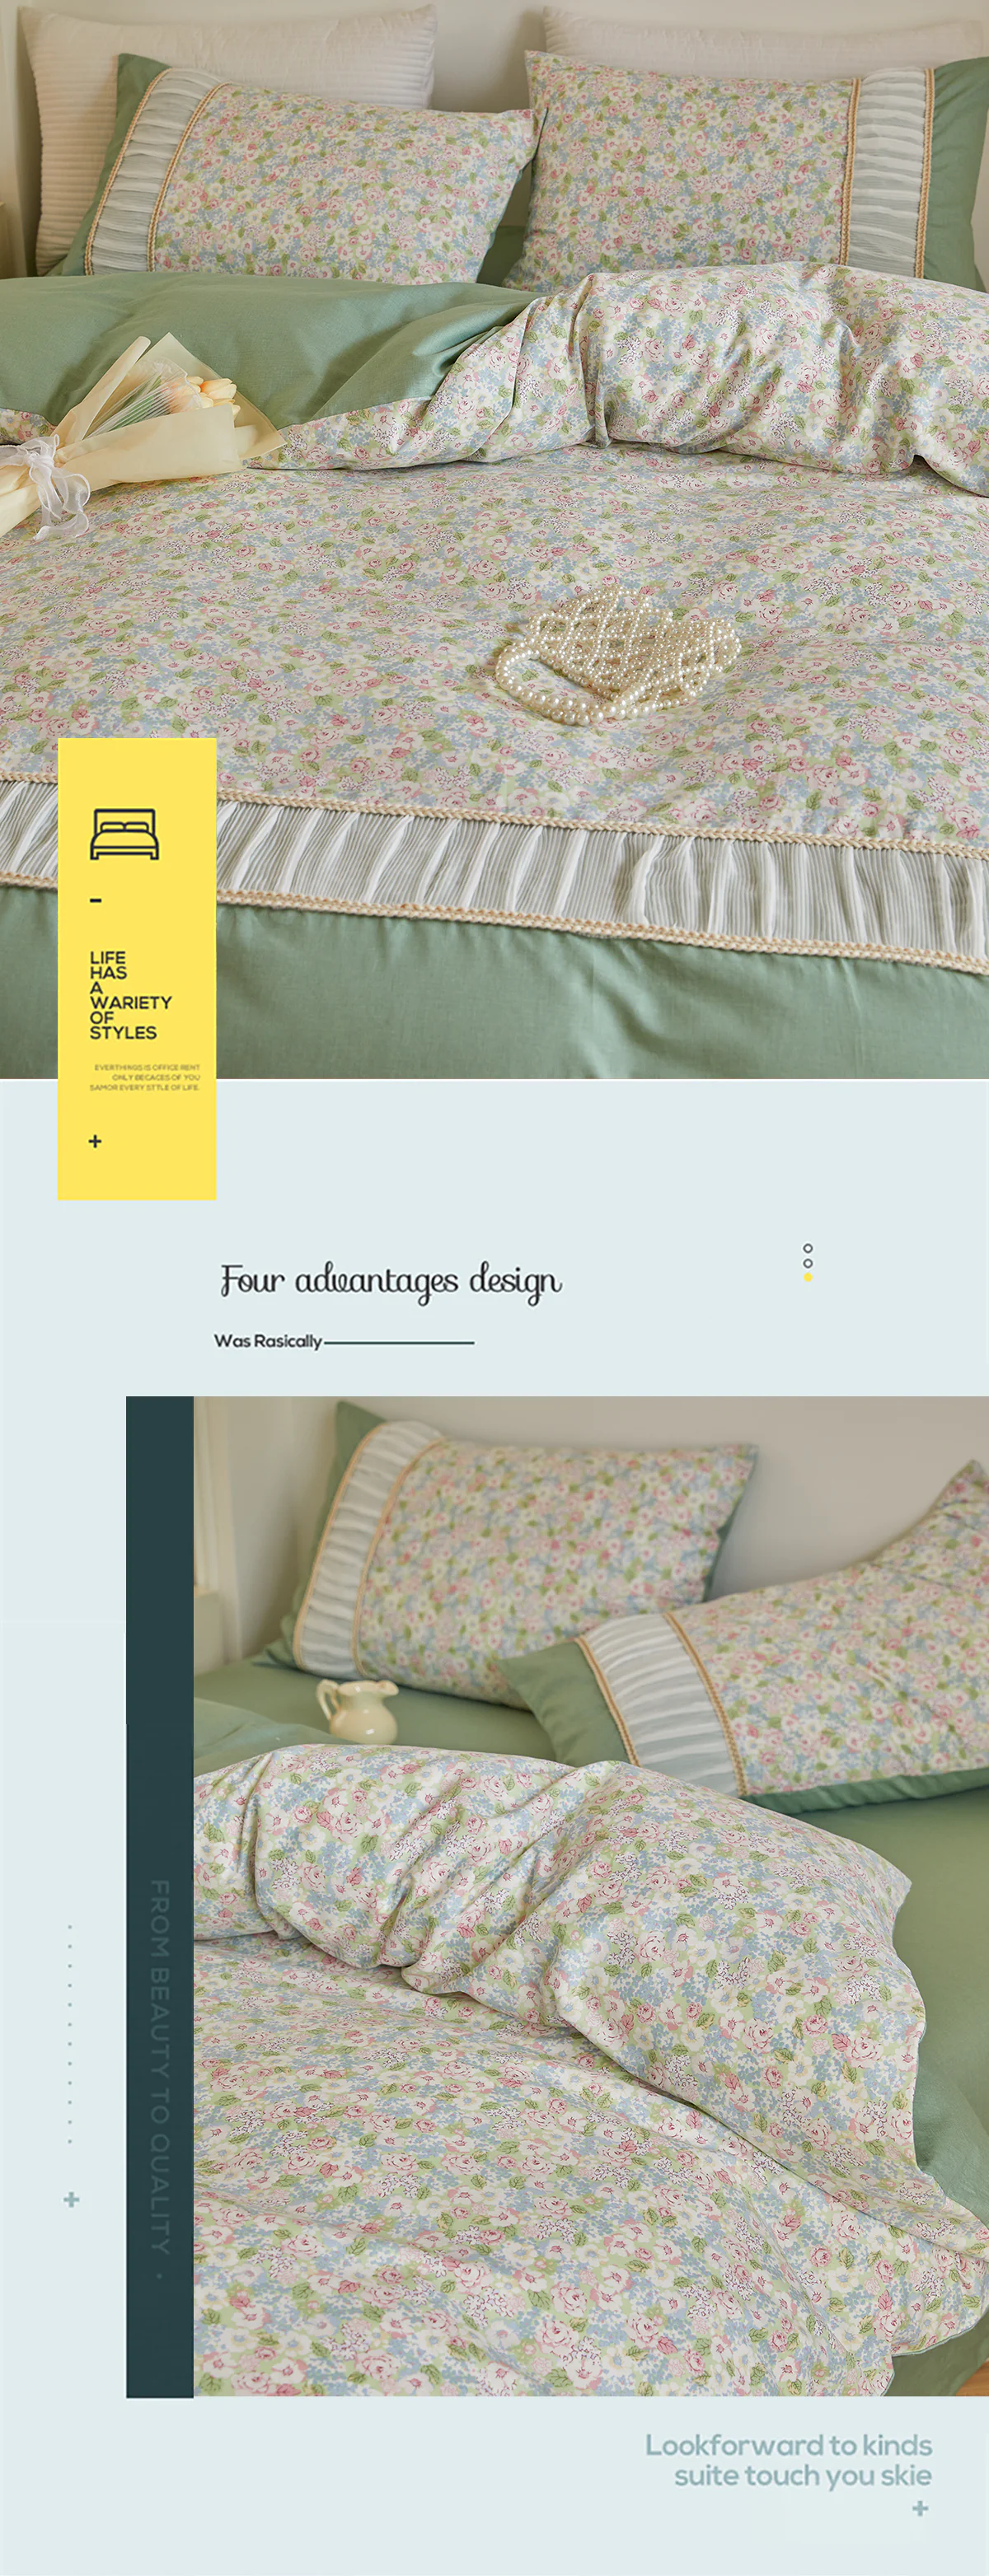 Retro-Princess-Style-100-Cotton-Floral-Duvet-Cover-Bedding-Set17